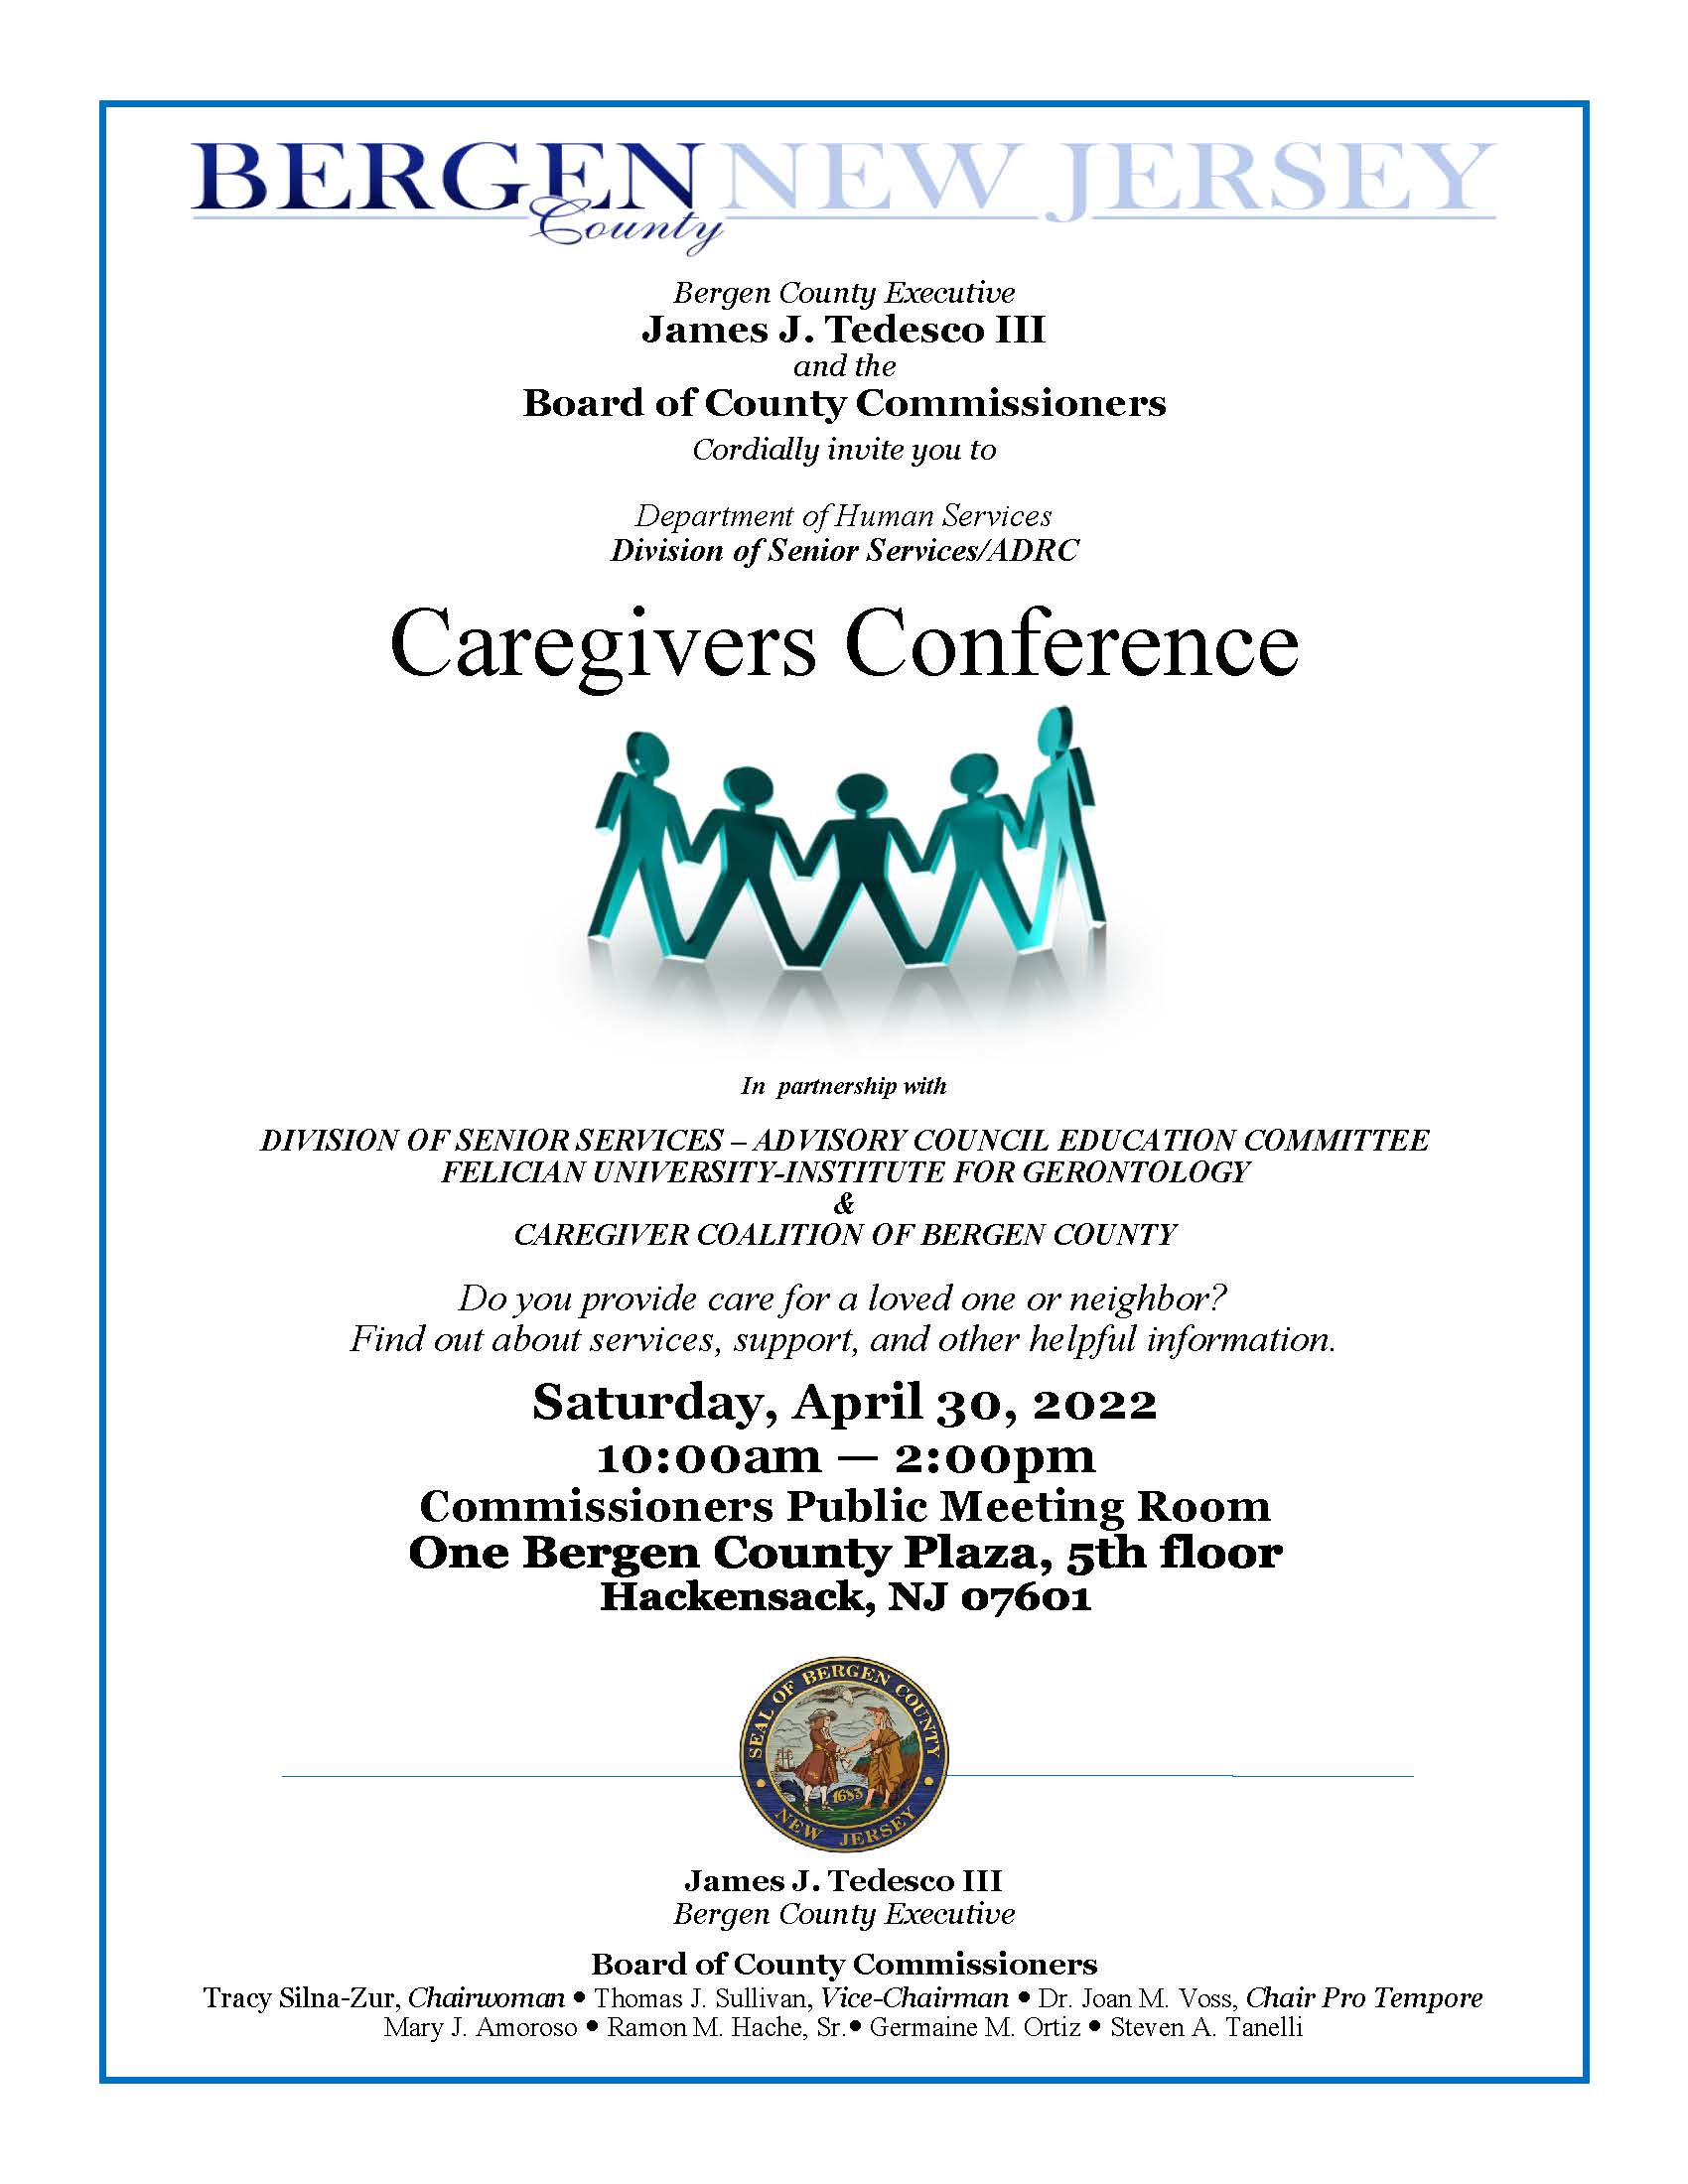 Spring Caregiver Conference Flyer 2022 Final